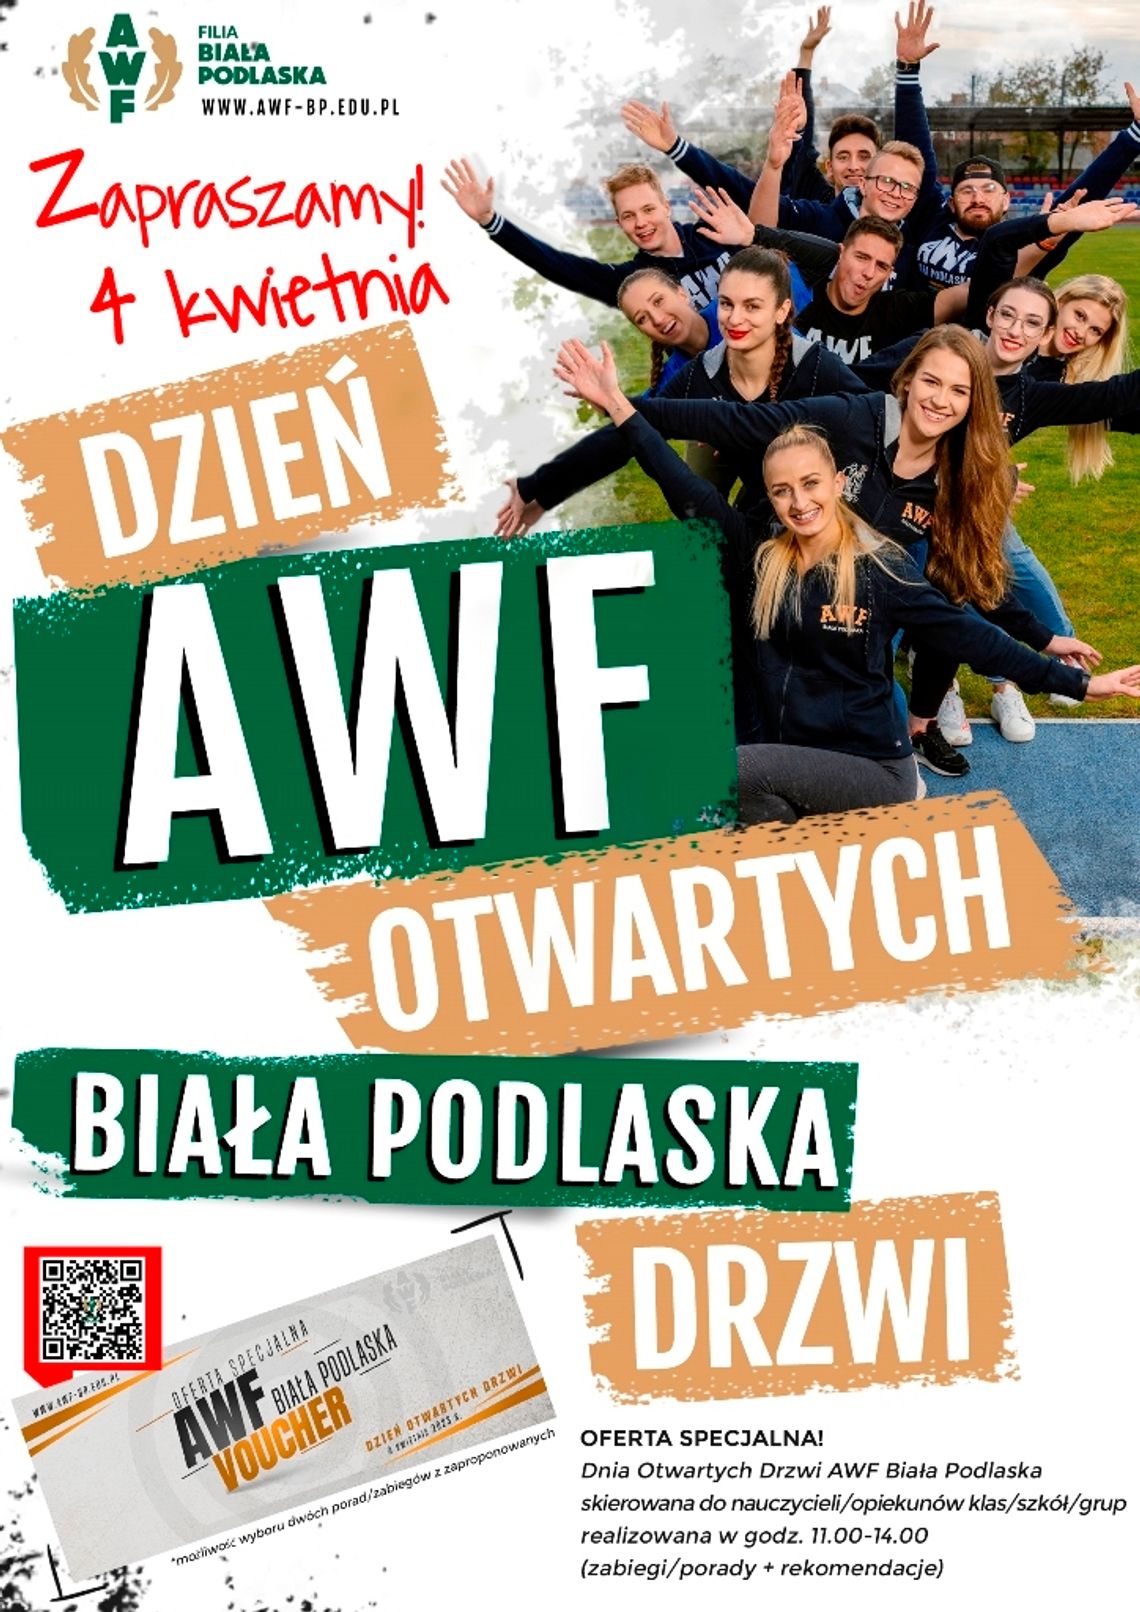 Dzień Otwartych Drzwi AWF Biała Podlaska już wkrótce!